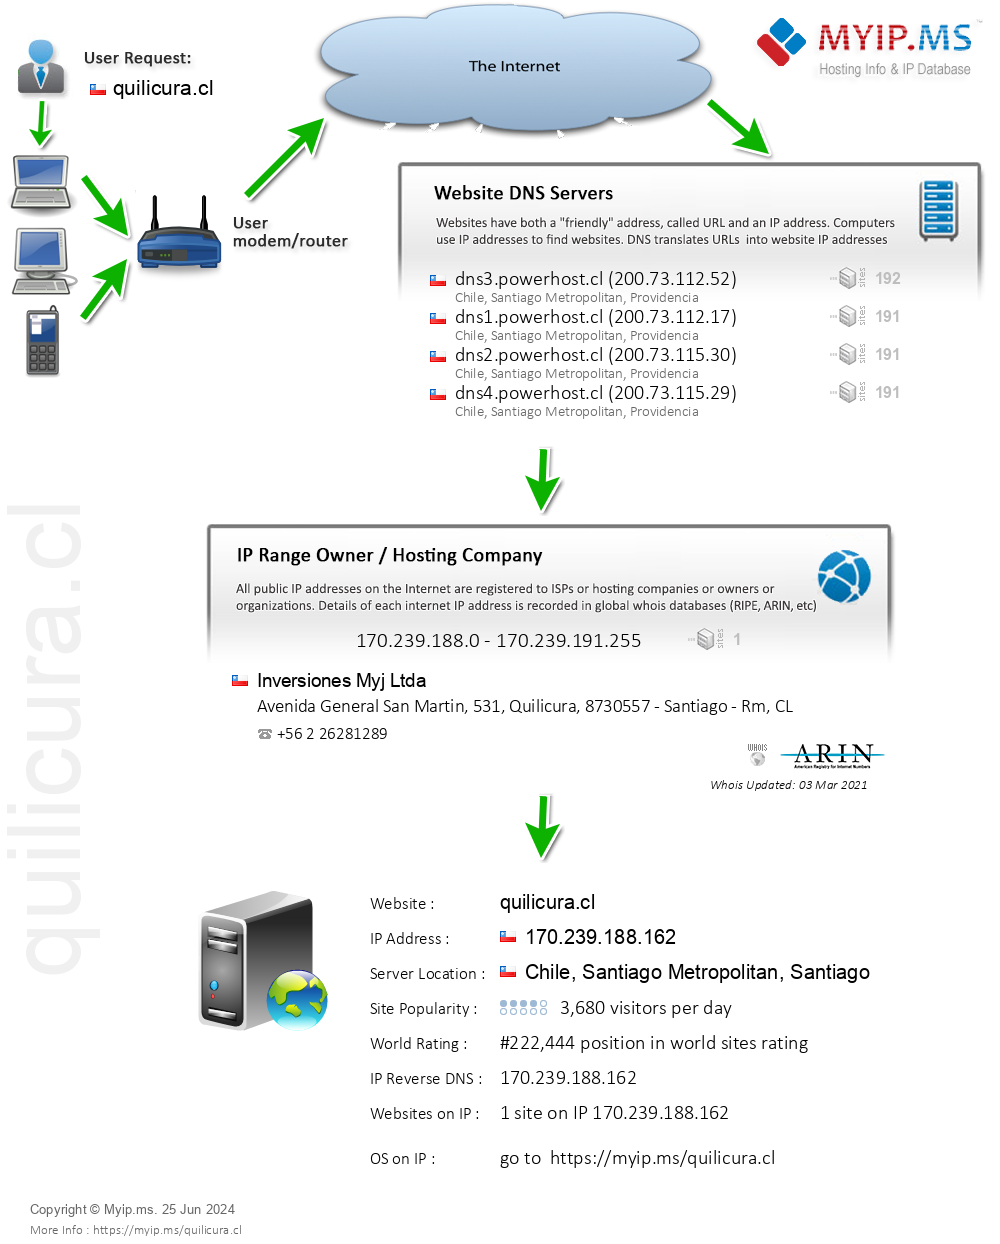 Quilicura.cl - Website Hosting Visual IP Diagram